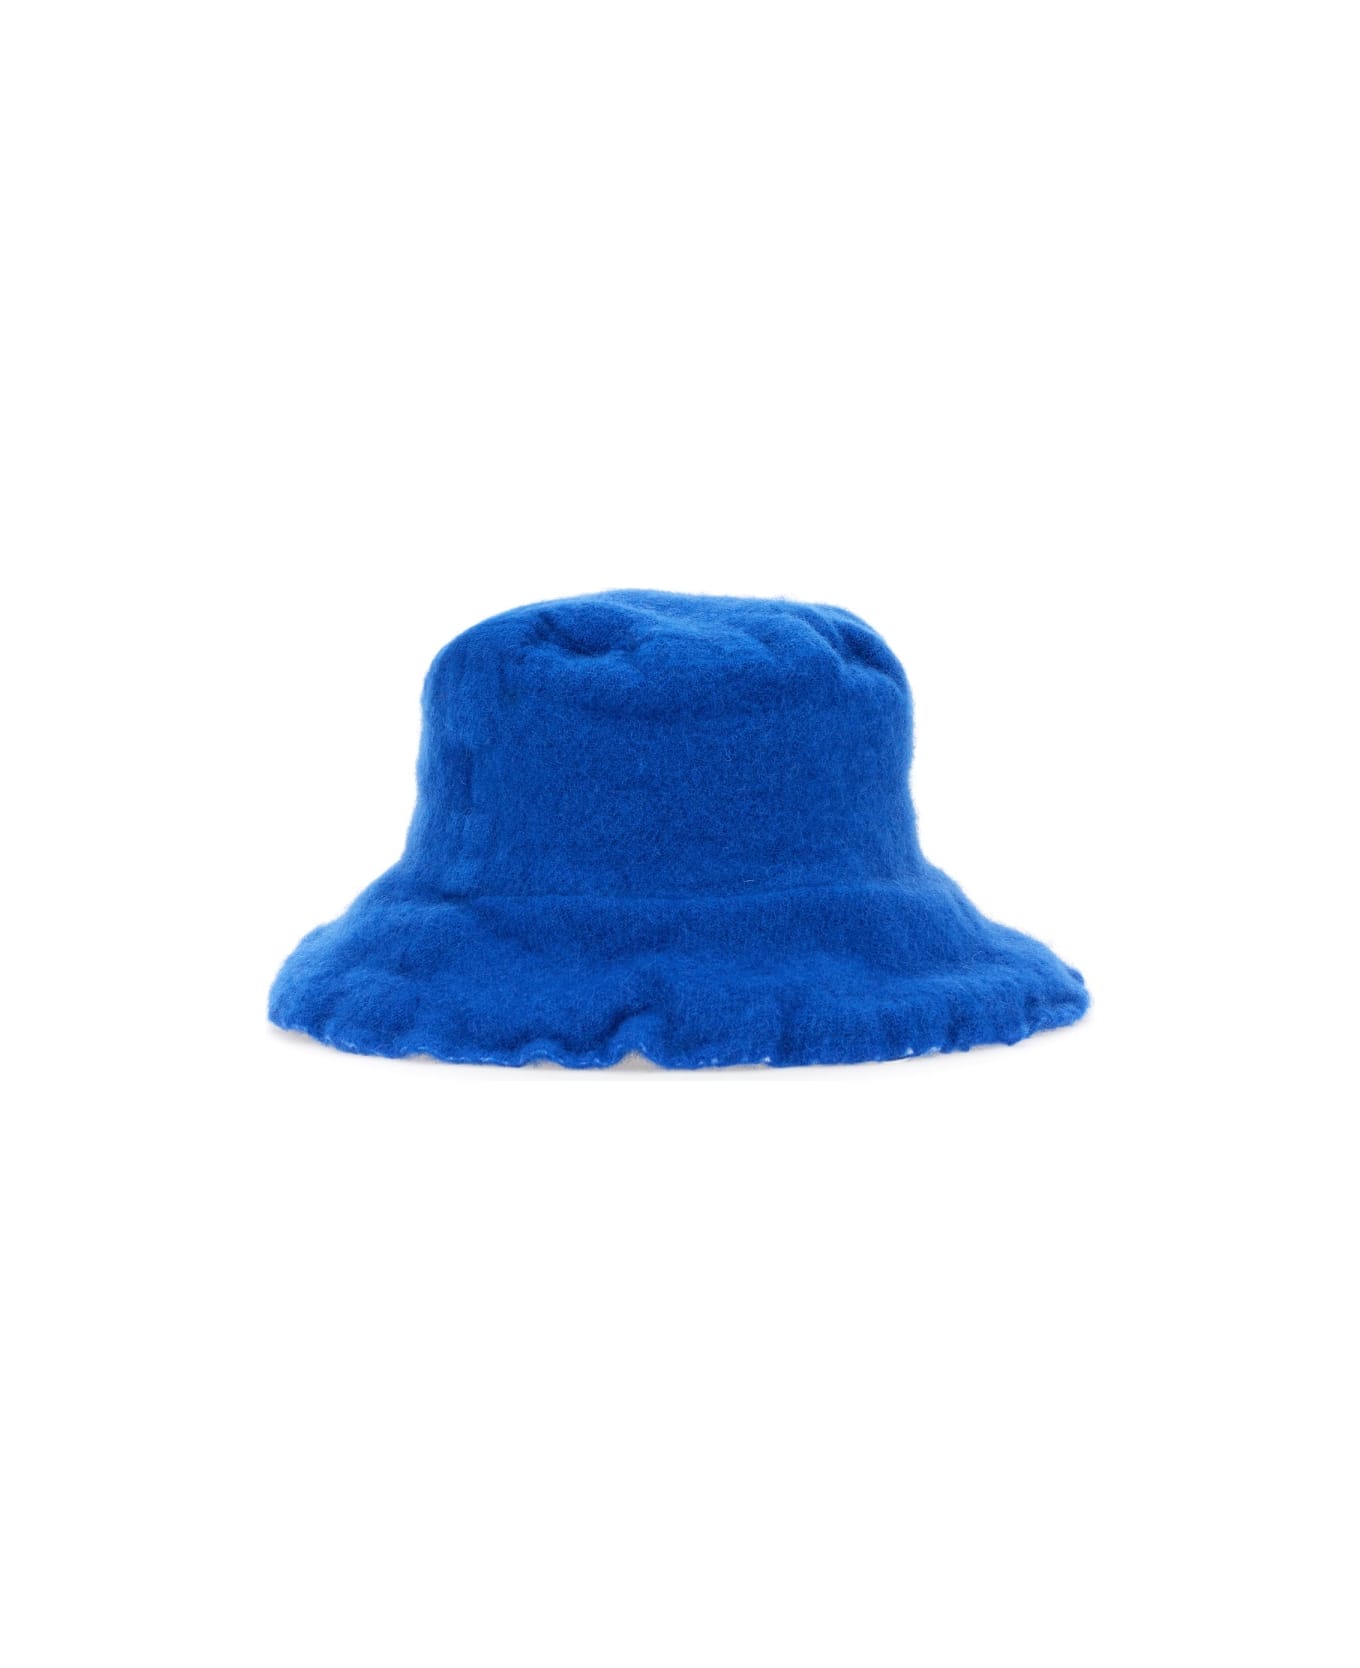 Comme des Garçons Shirt Wool Bucket Hat - BLUE 帽子